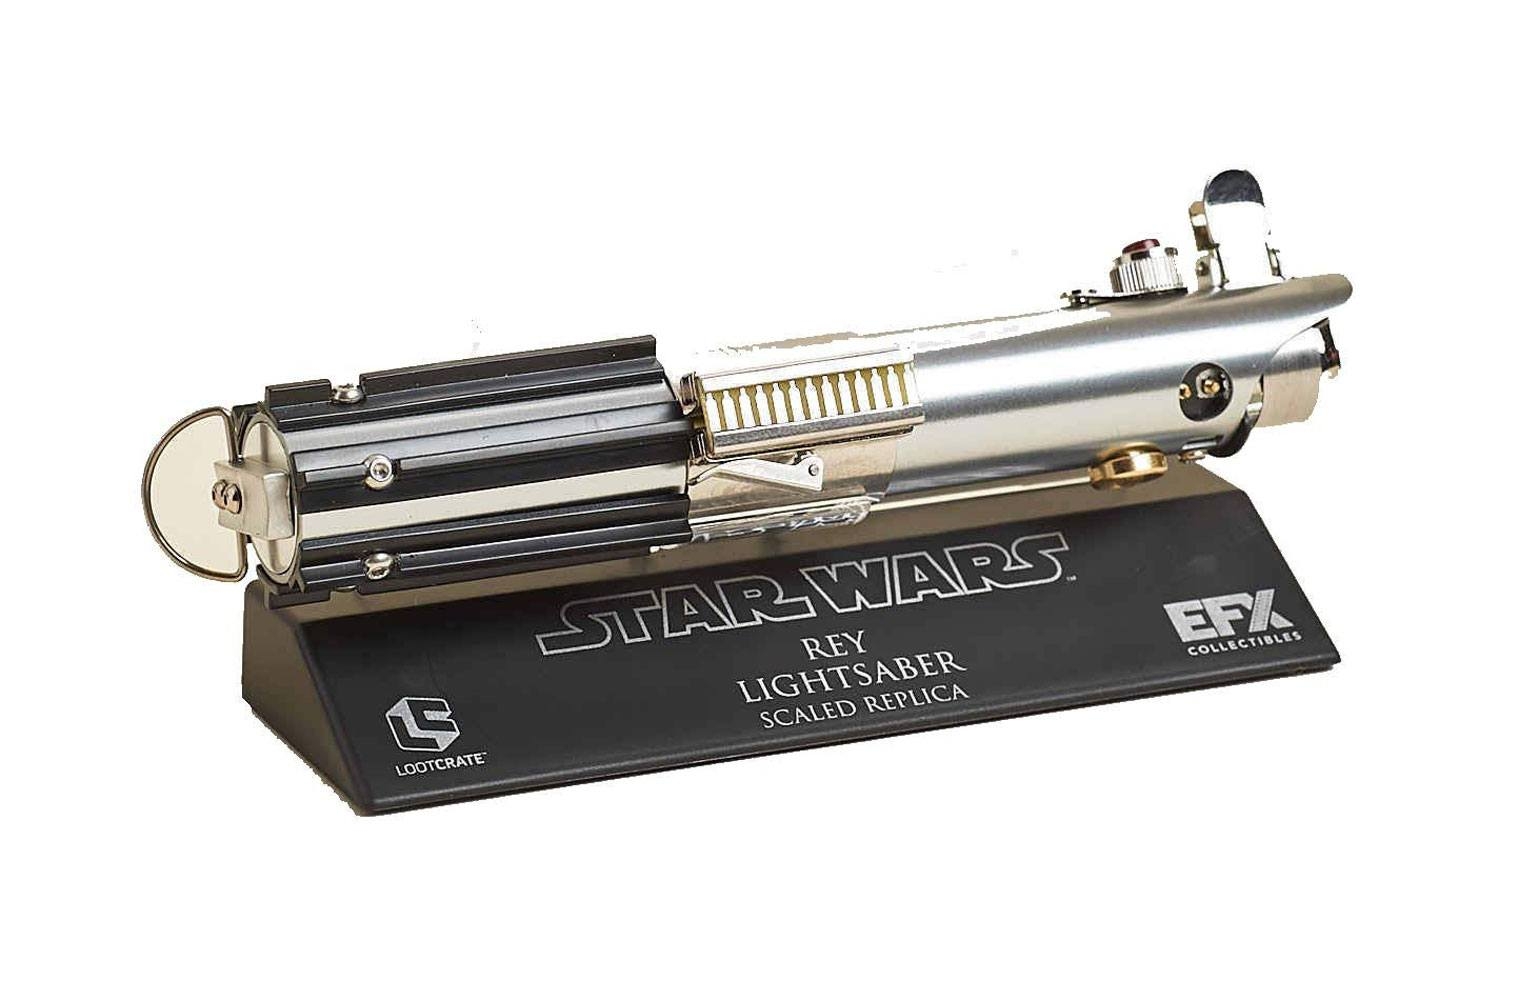 Star Wars - Réplique sabre laser de Rey LC Exclusive 13 cm -  Figurine-Discount